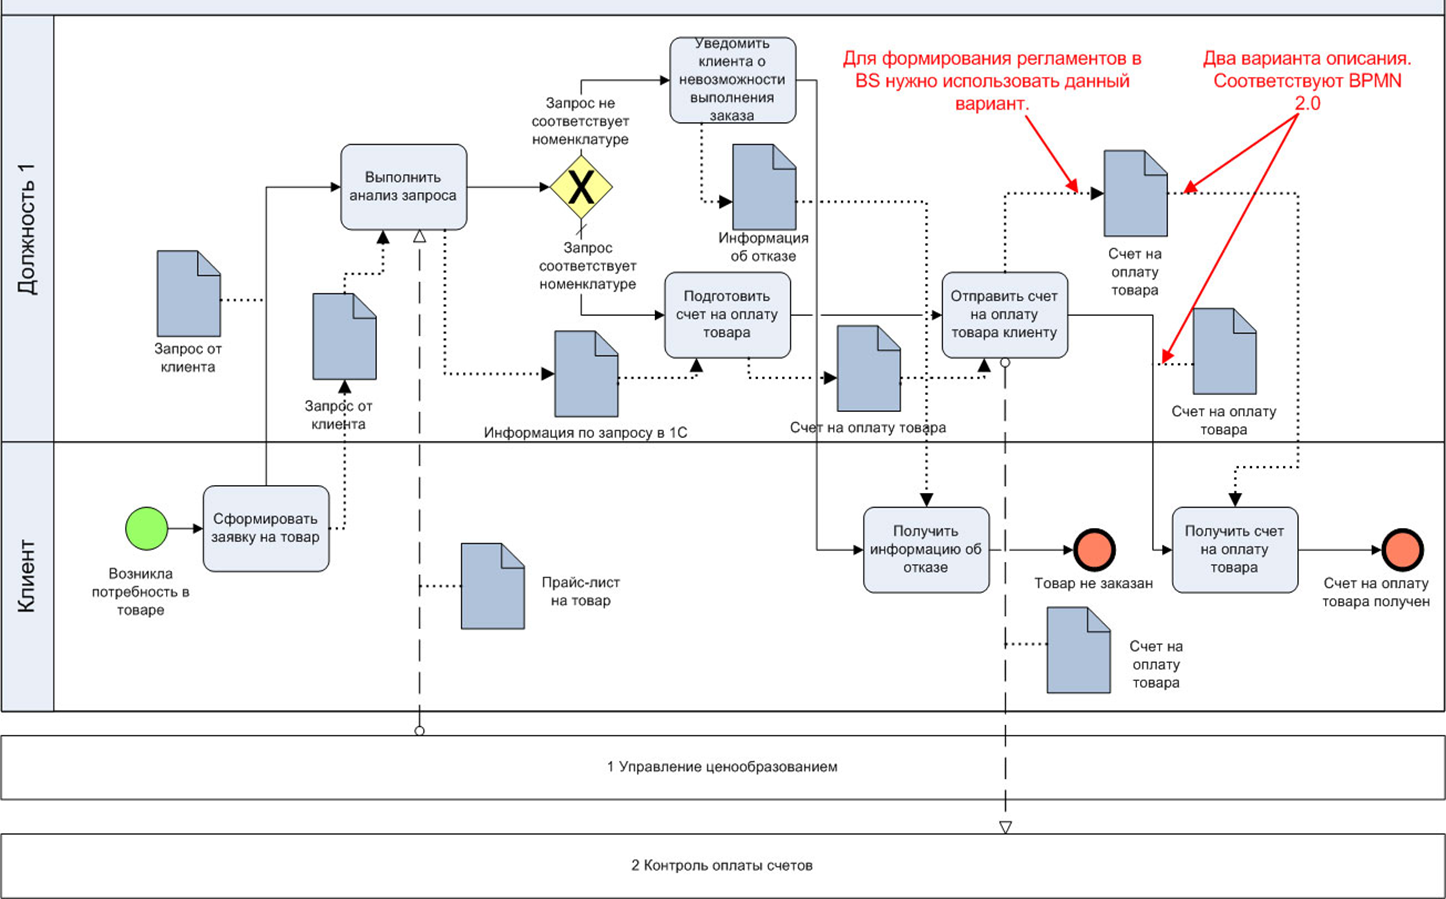 Бизнес процесс информационное обеспечение. Схема процесса в нотации BPMN. Диаграмма бизнес процессов BPMN 2.0. Схема бизнес процесса в нотации BPMN. Бизнес процесс BPMN 2.0.